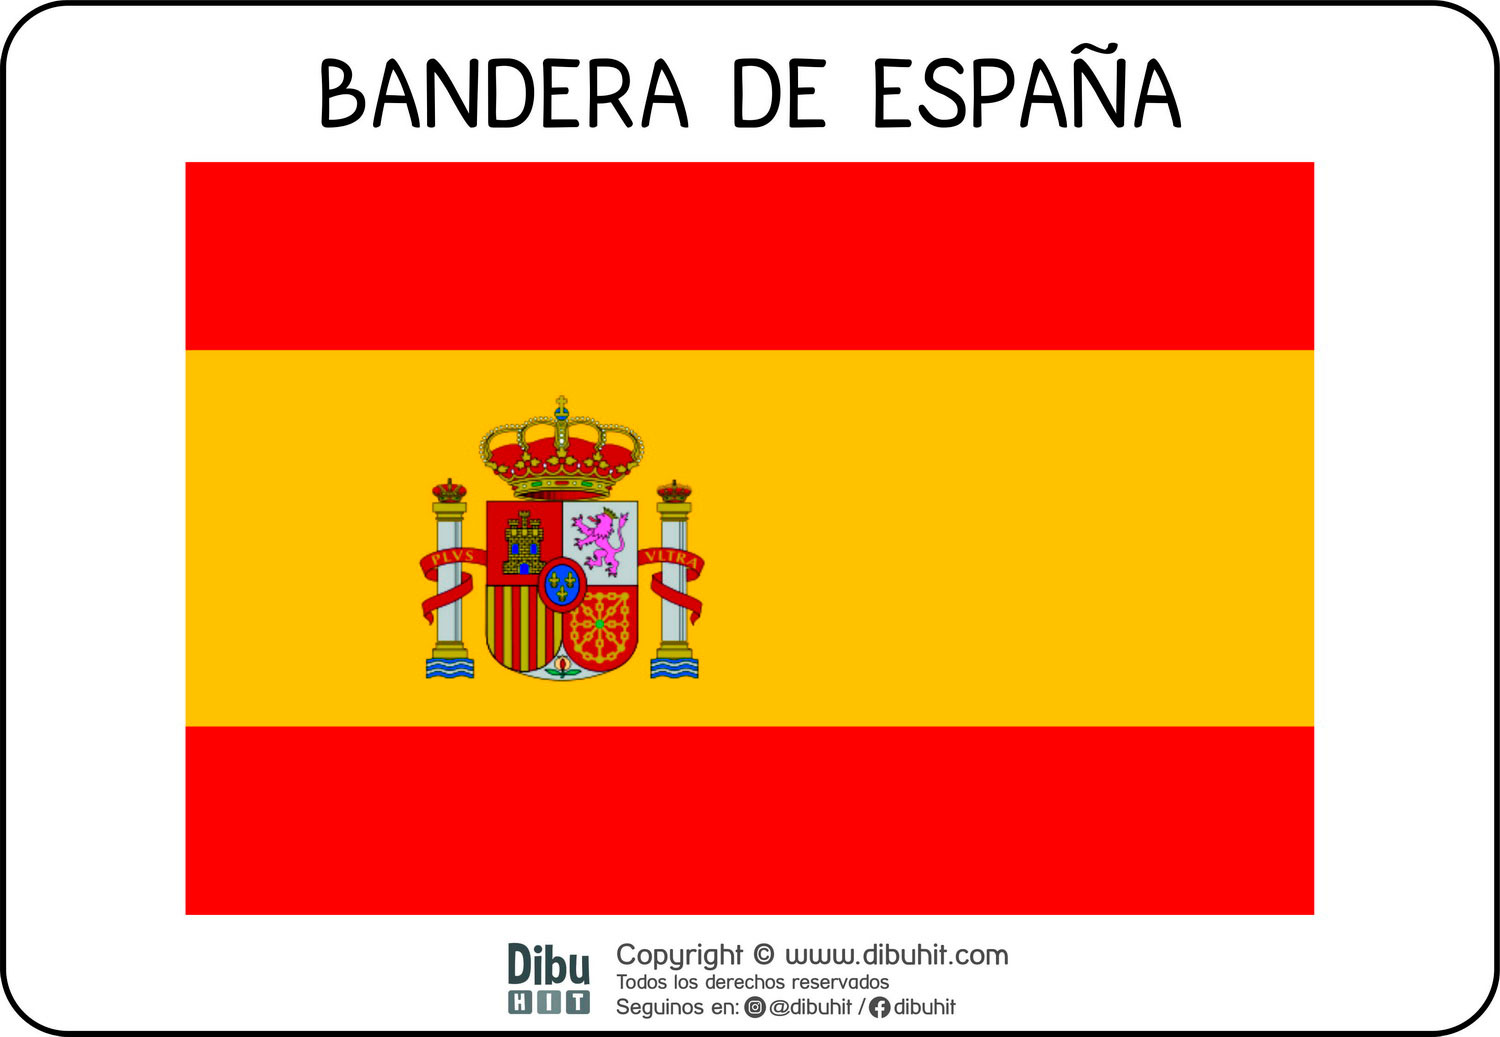 Lamina didactica bandera de España a colores